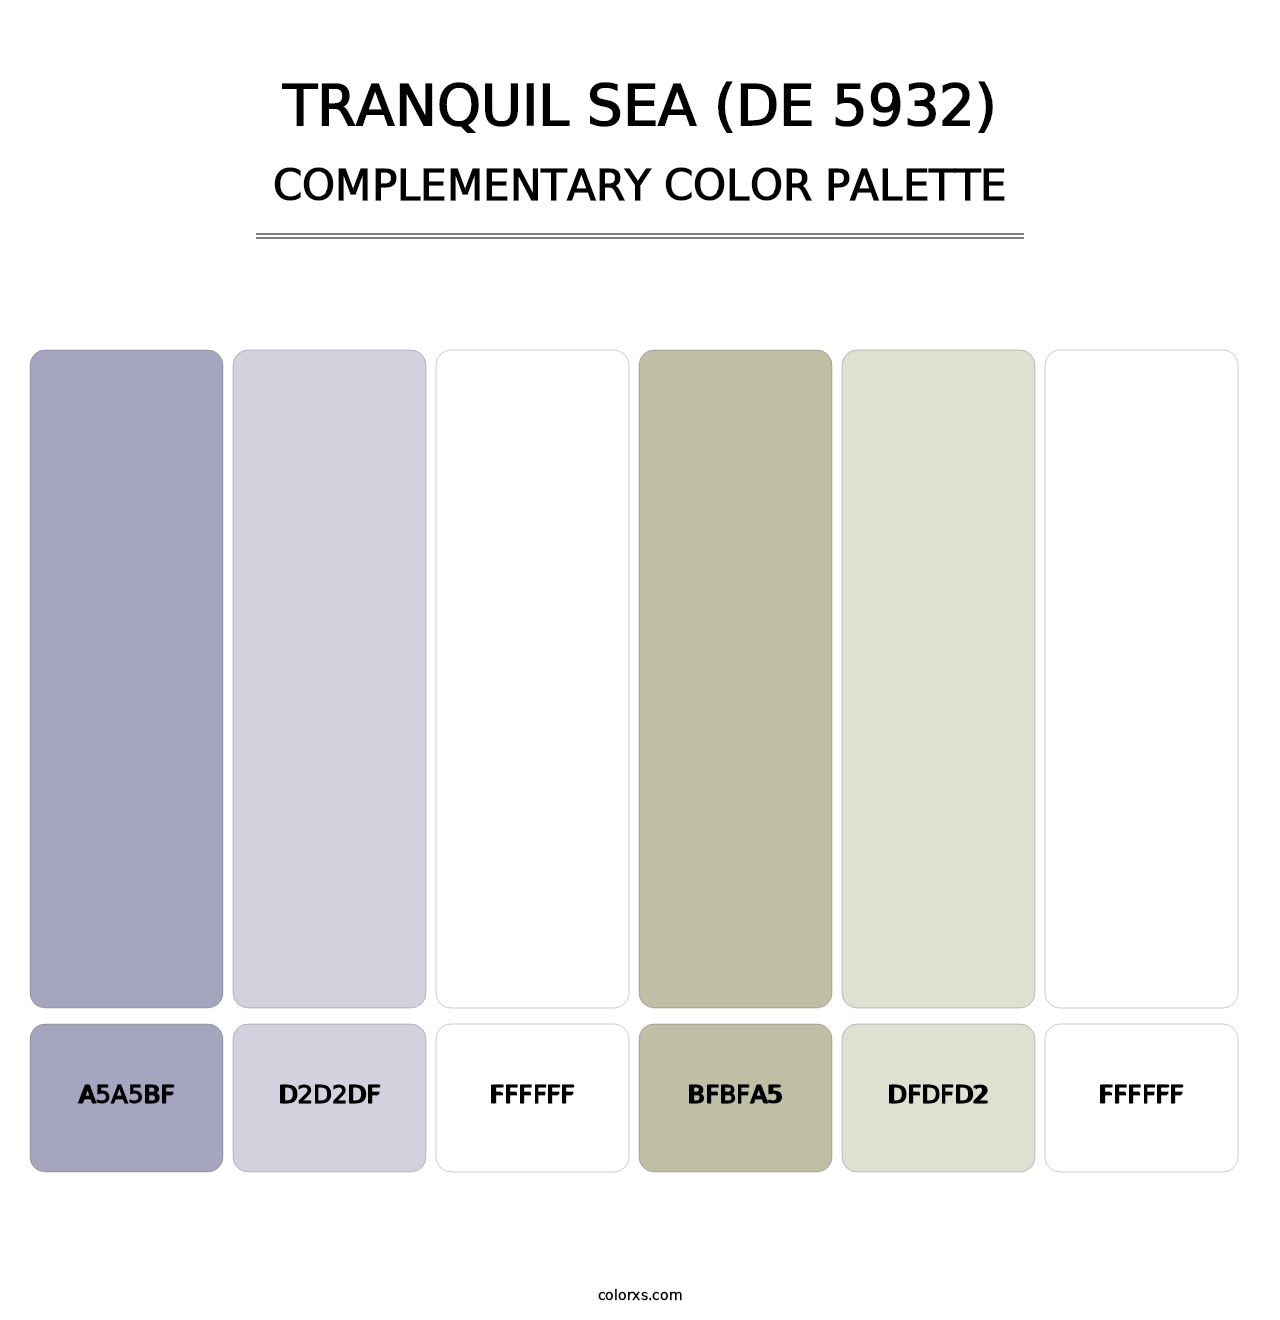 Tranquil Sea (DE 5932) - Complementary Color Palette